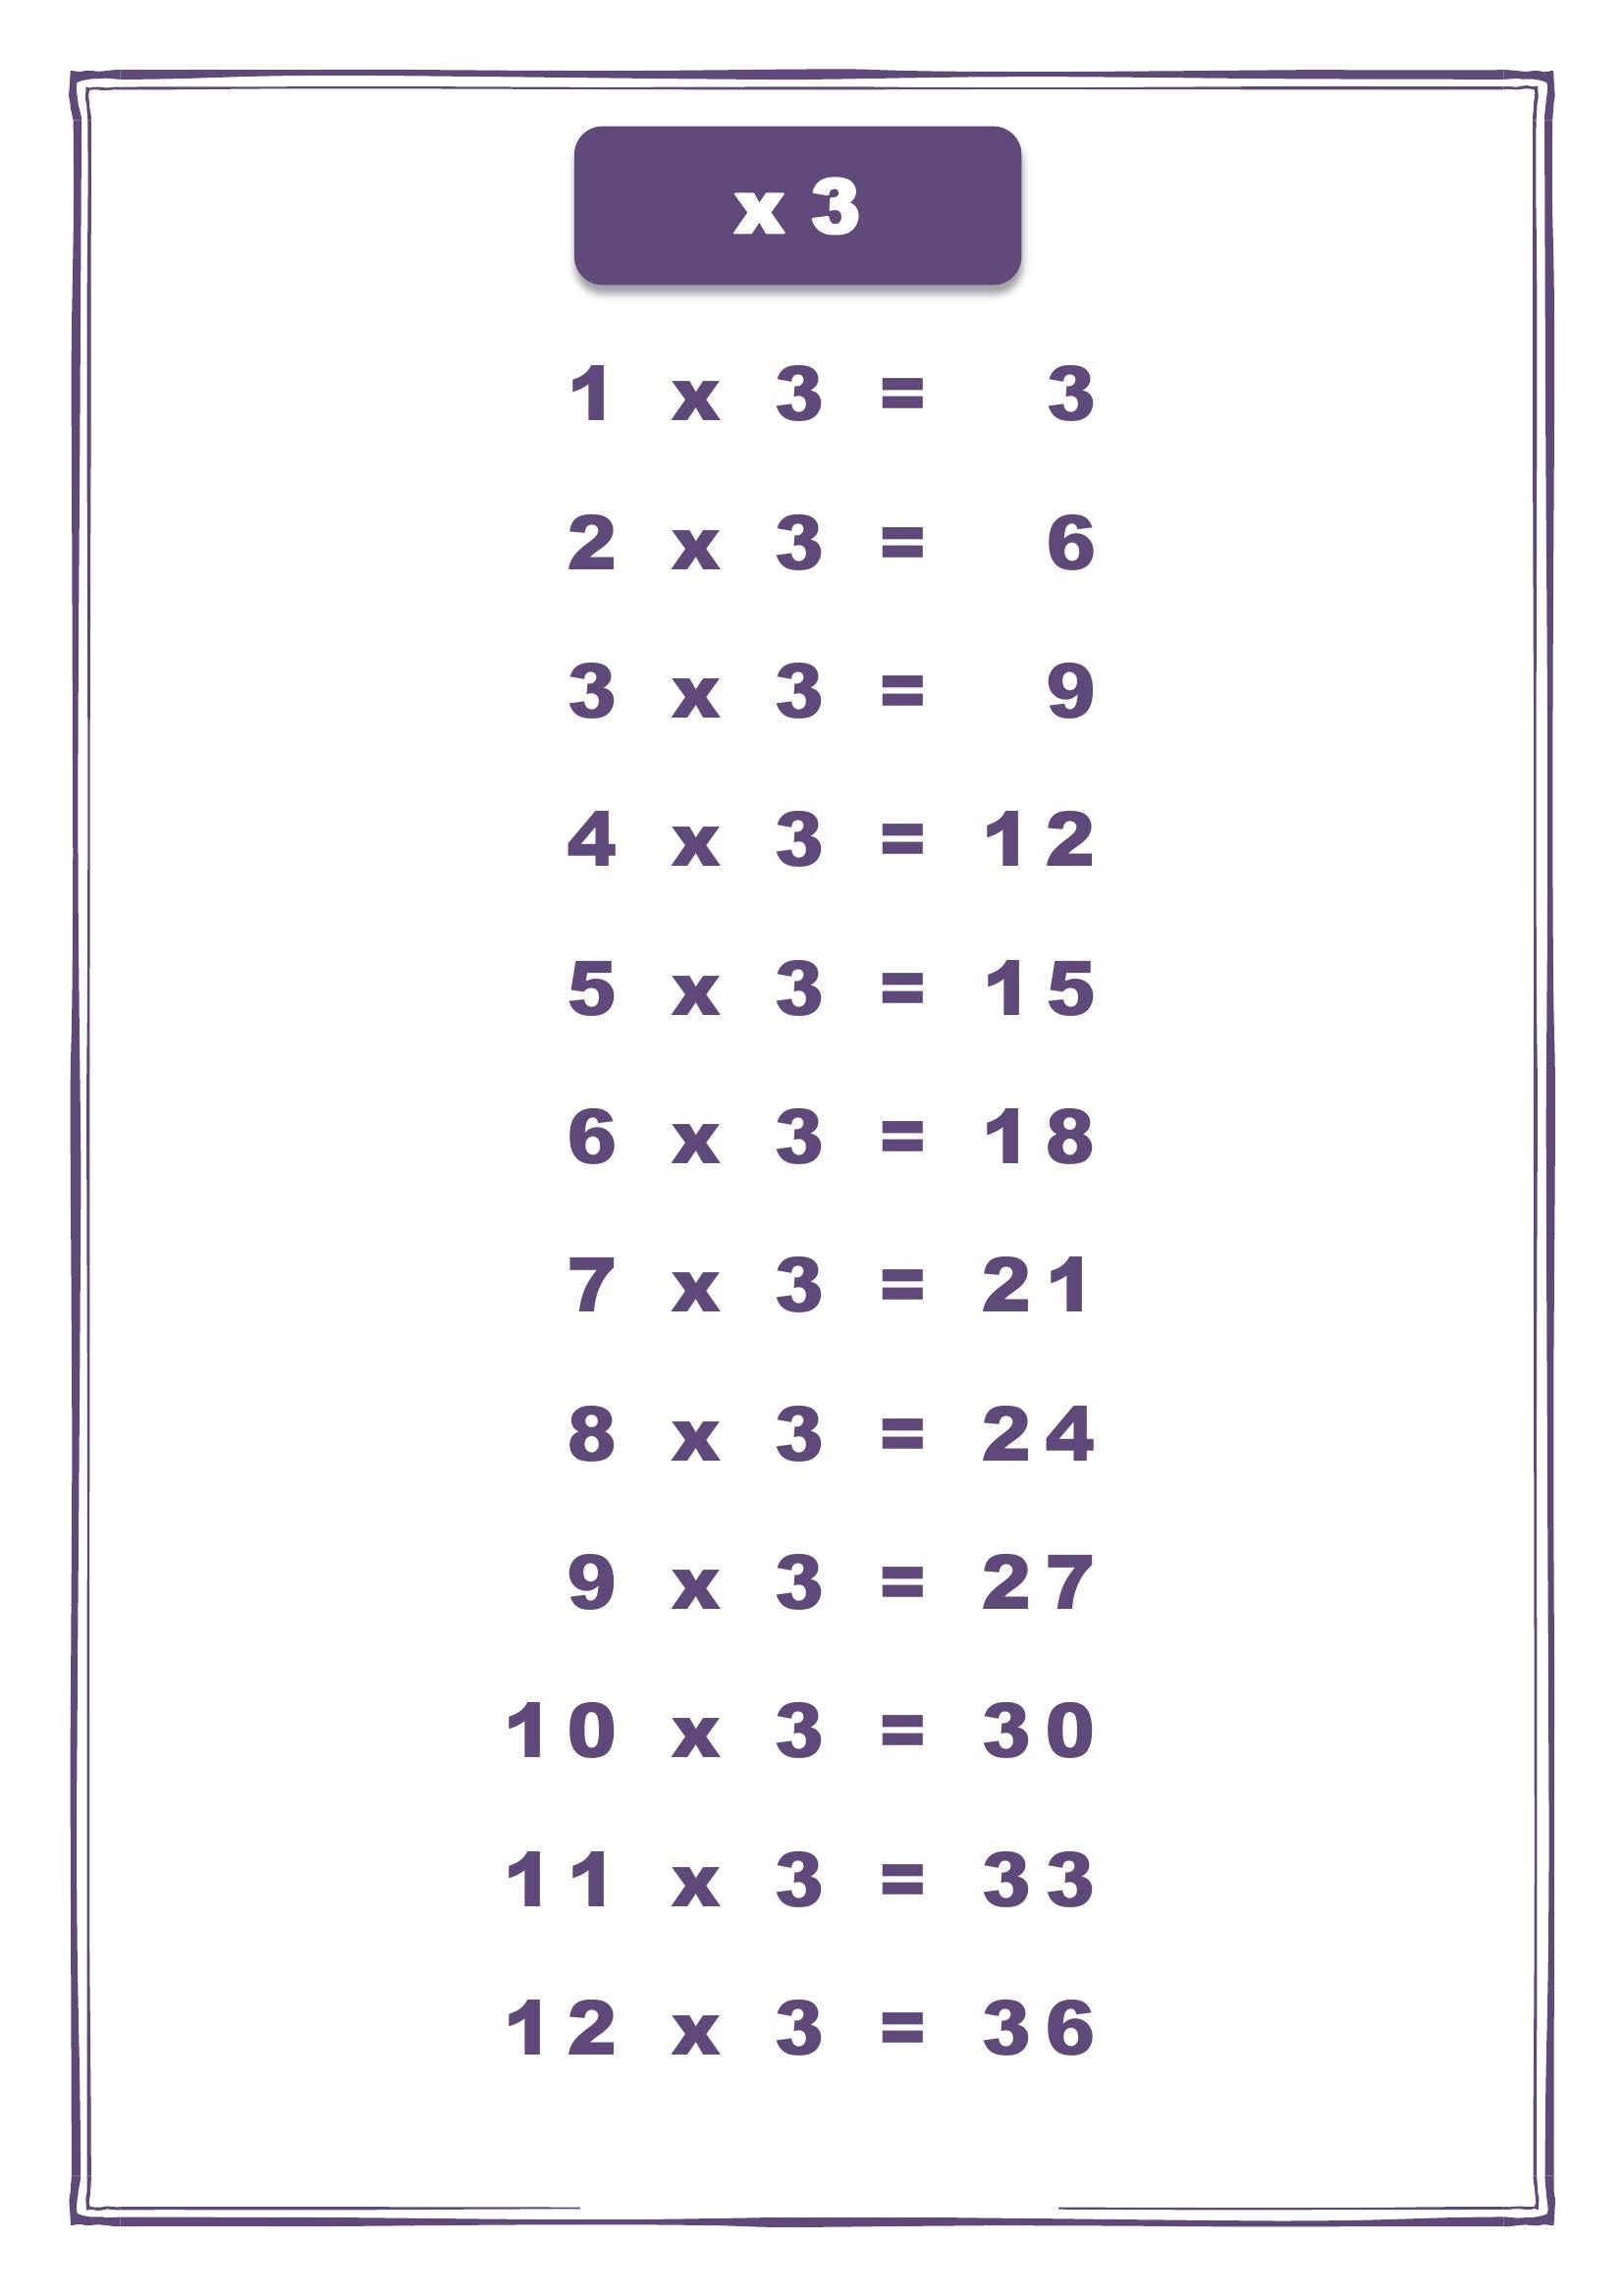 Таблица умножения на 3 - второй вариант